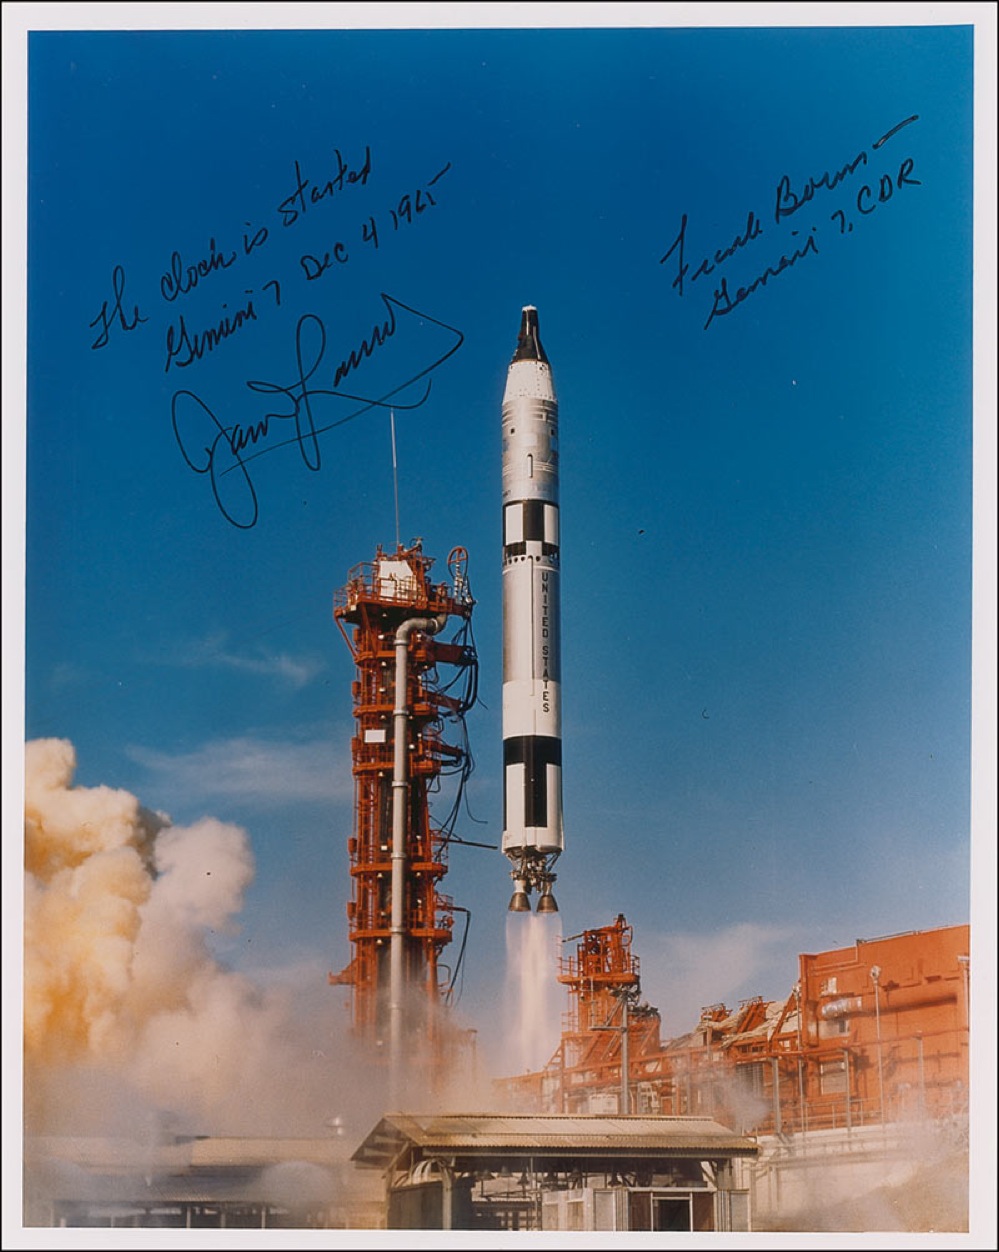 Lot #460 Gemini 07: Lovell and Borman